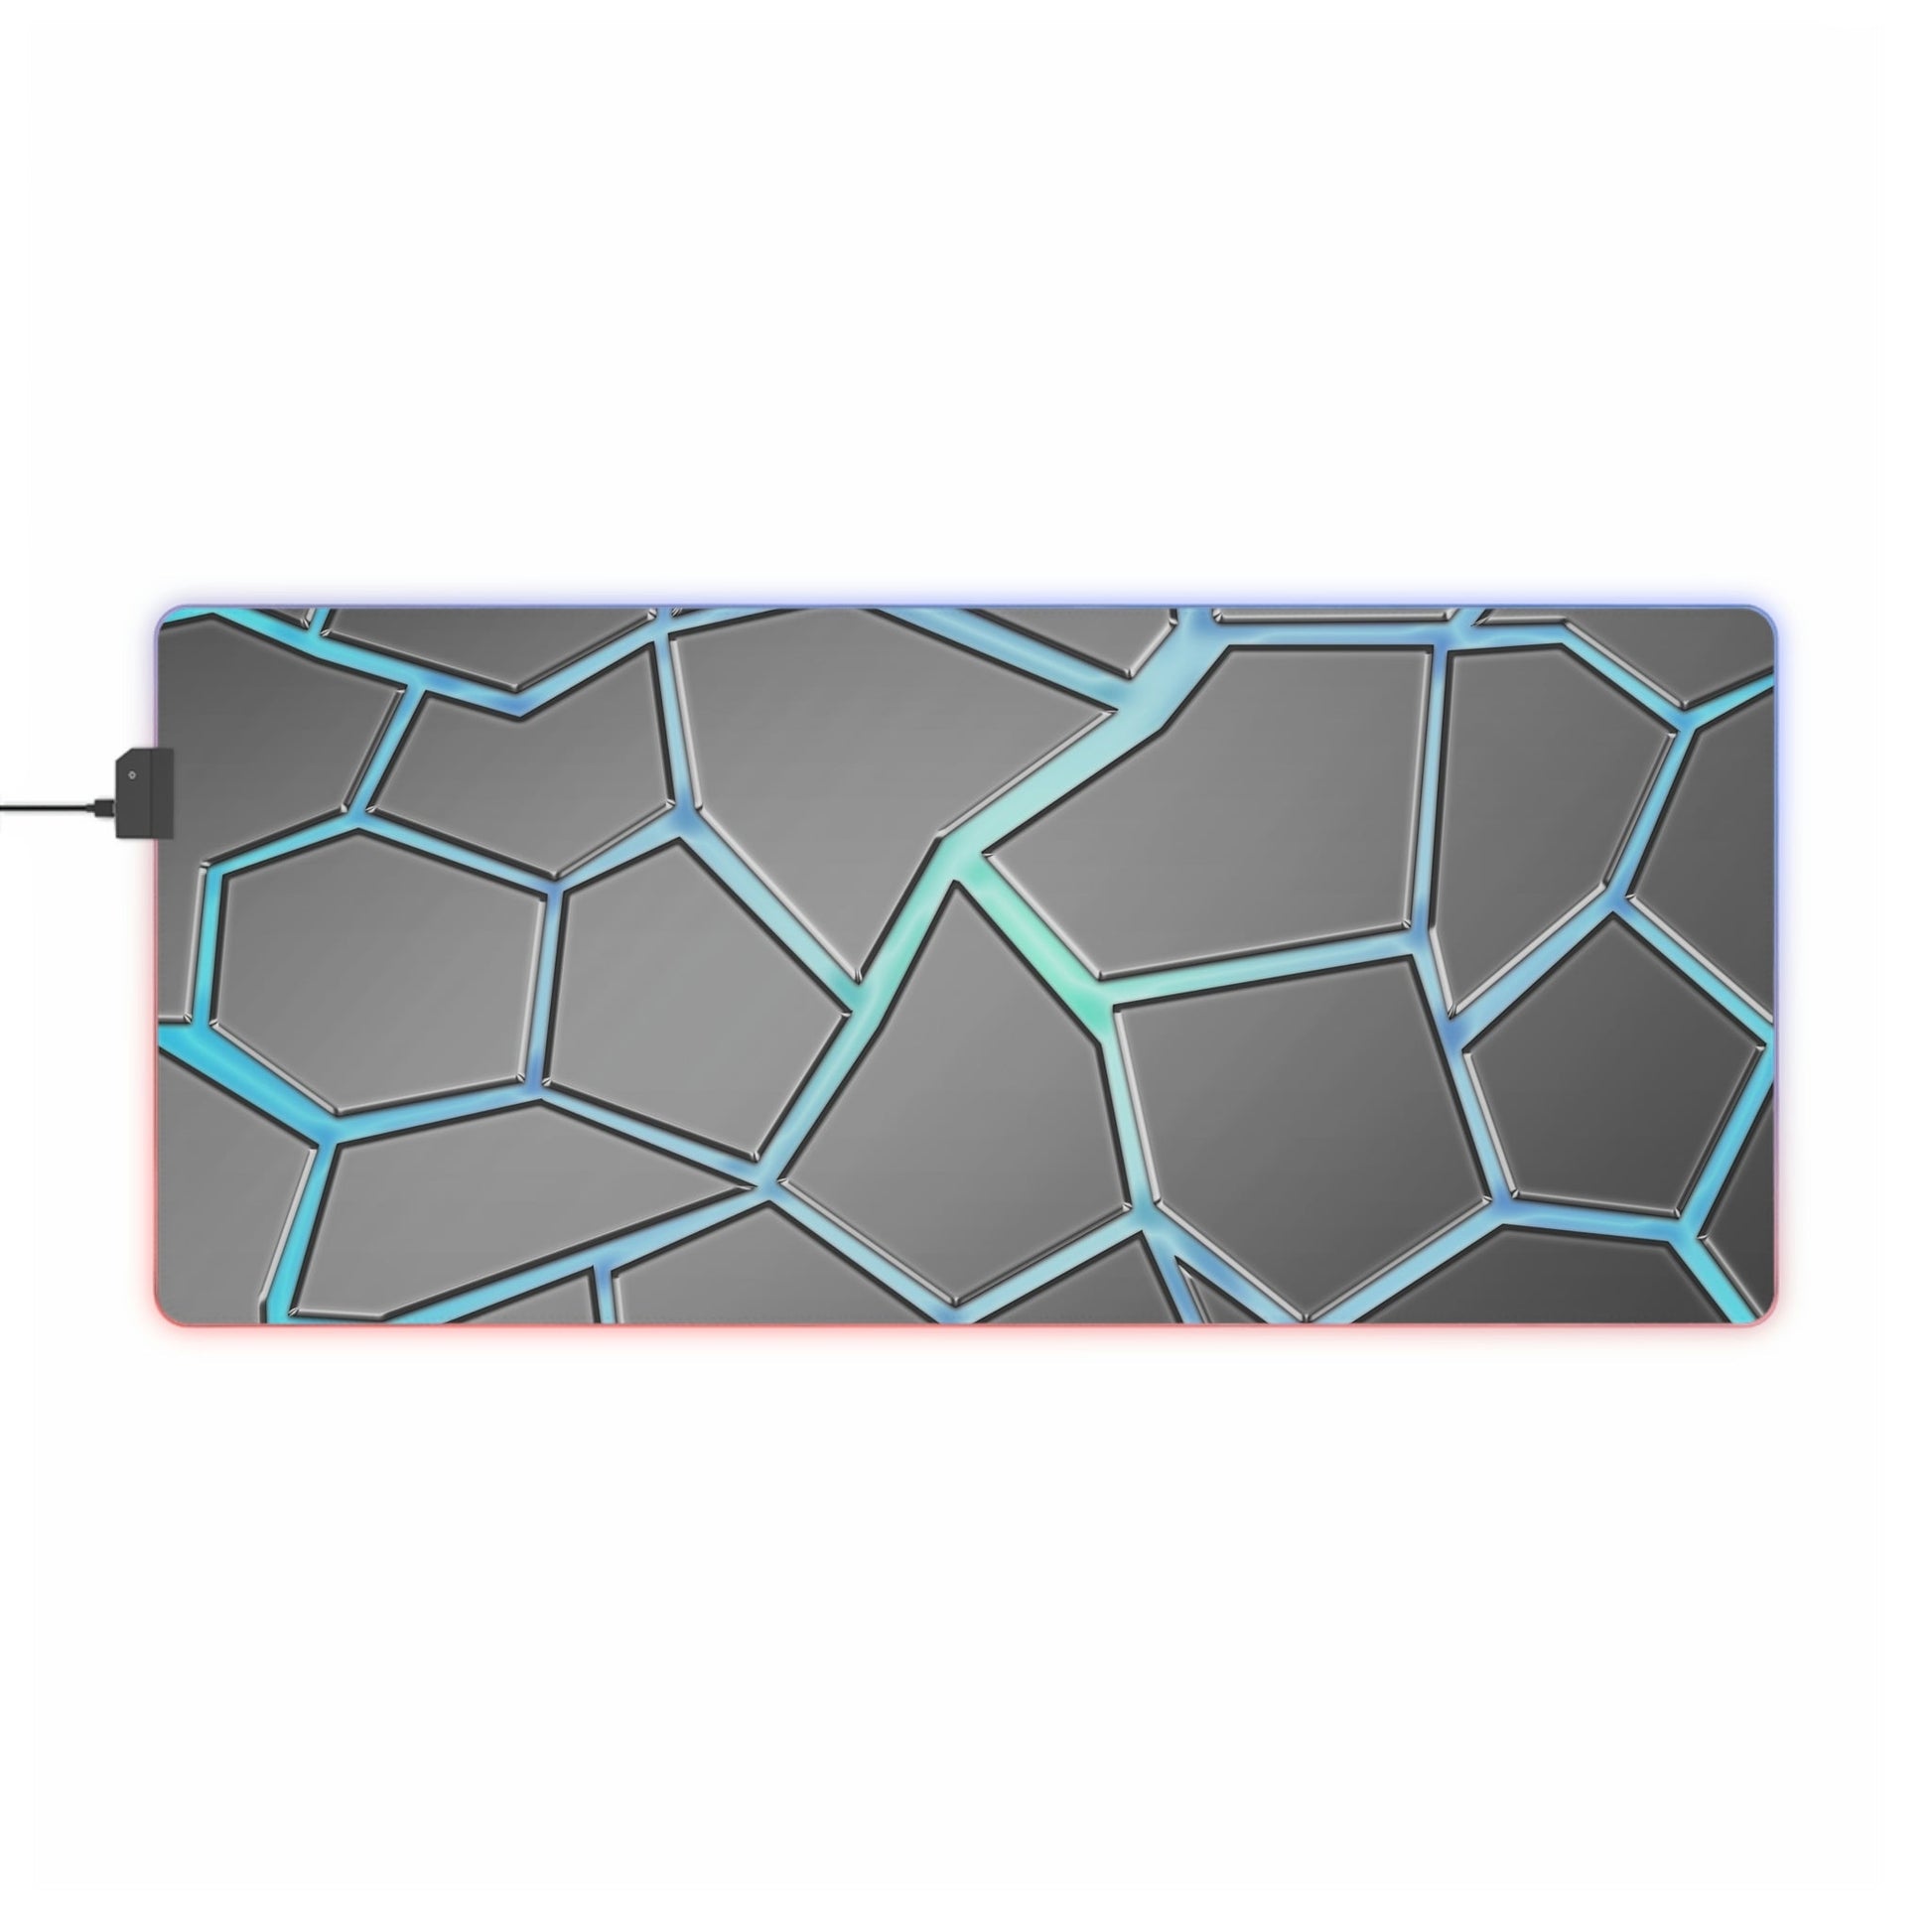 35.4 x 15.7 / Rectangle 1 Neduz Blue Cracks LED Gaming Mouse